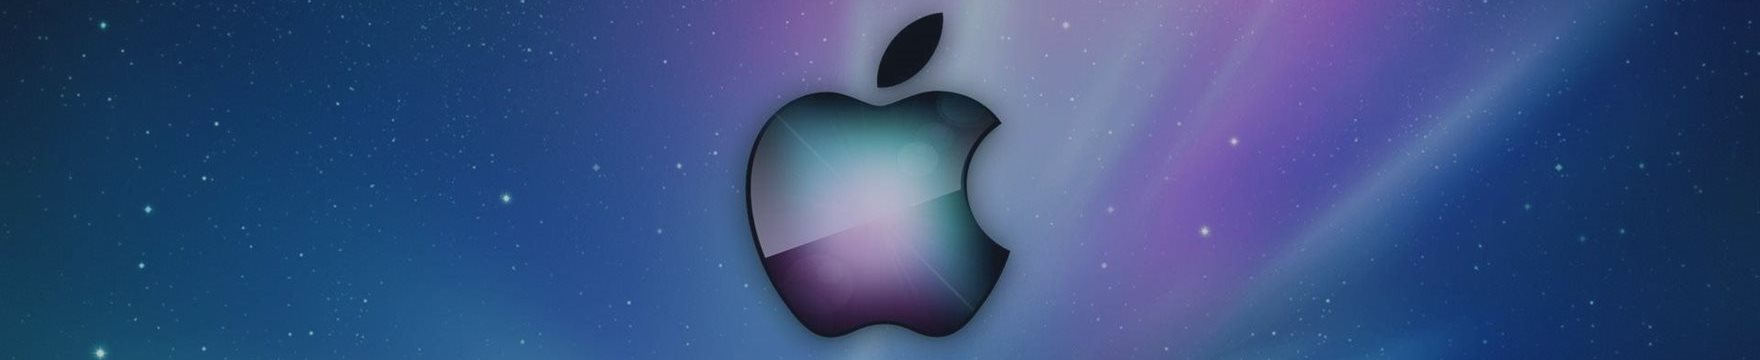 Apple заблокировала приложения, позволявшие шпионить за китайскими пользователями iPhone